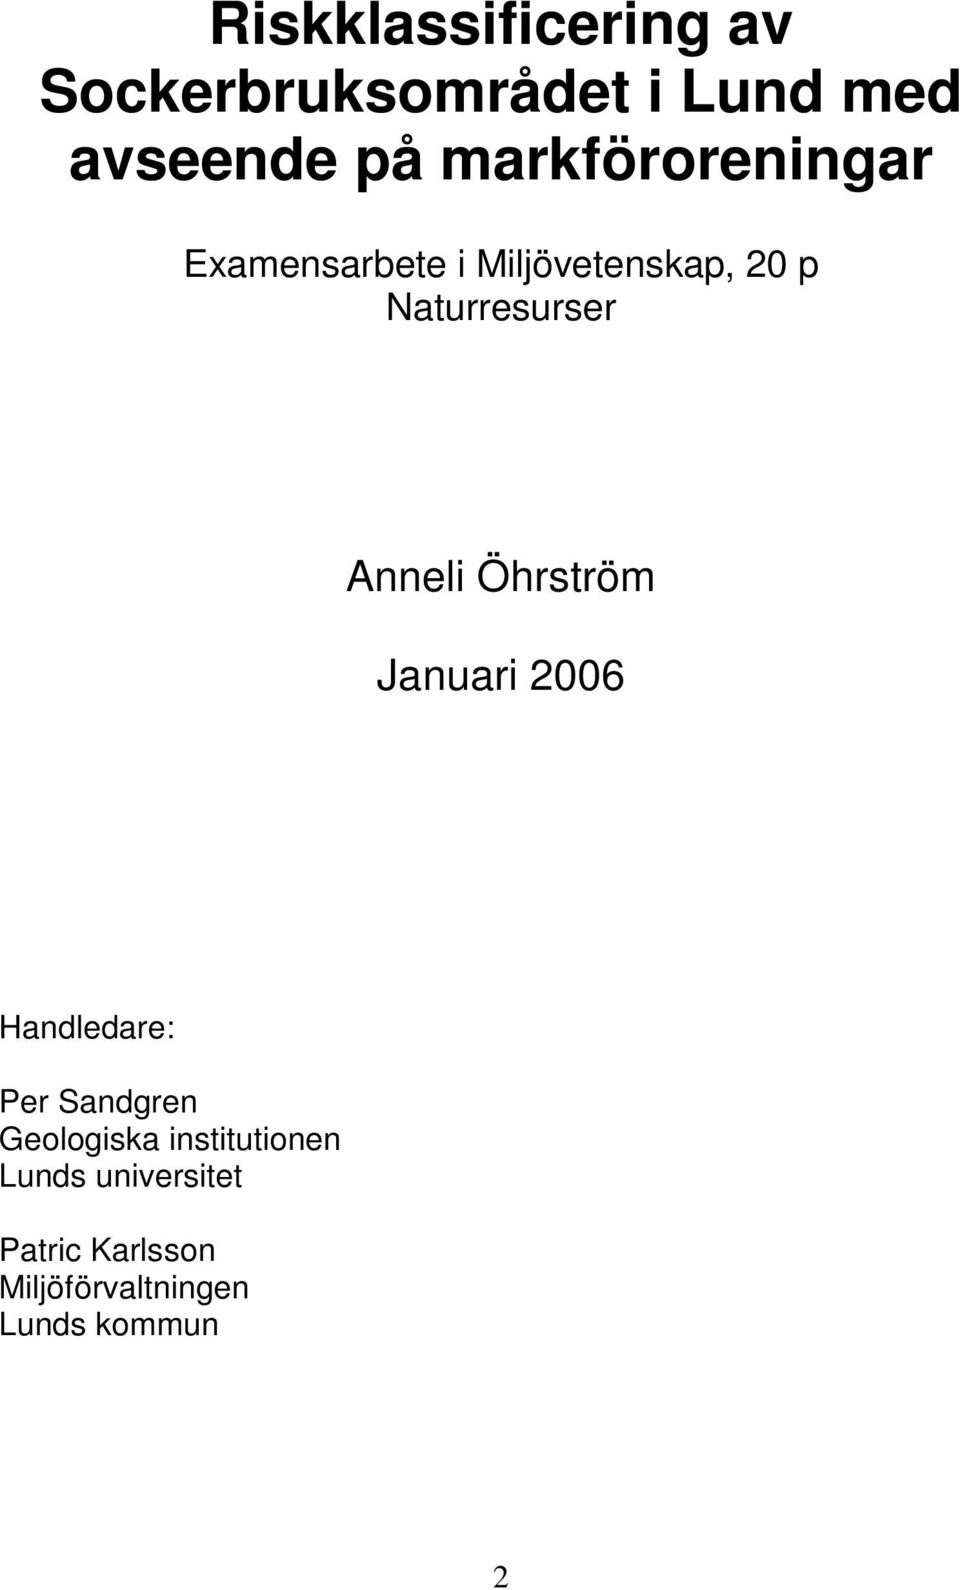 Anneli Öhrström Januari 2006 Handledare: Per Sandgren Geologiska